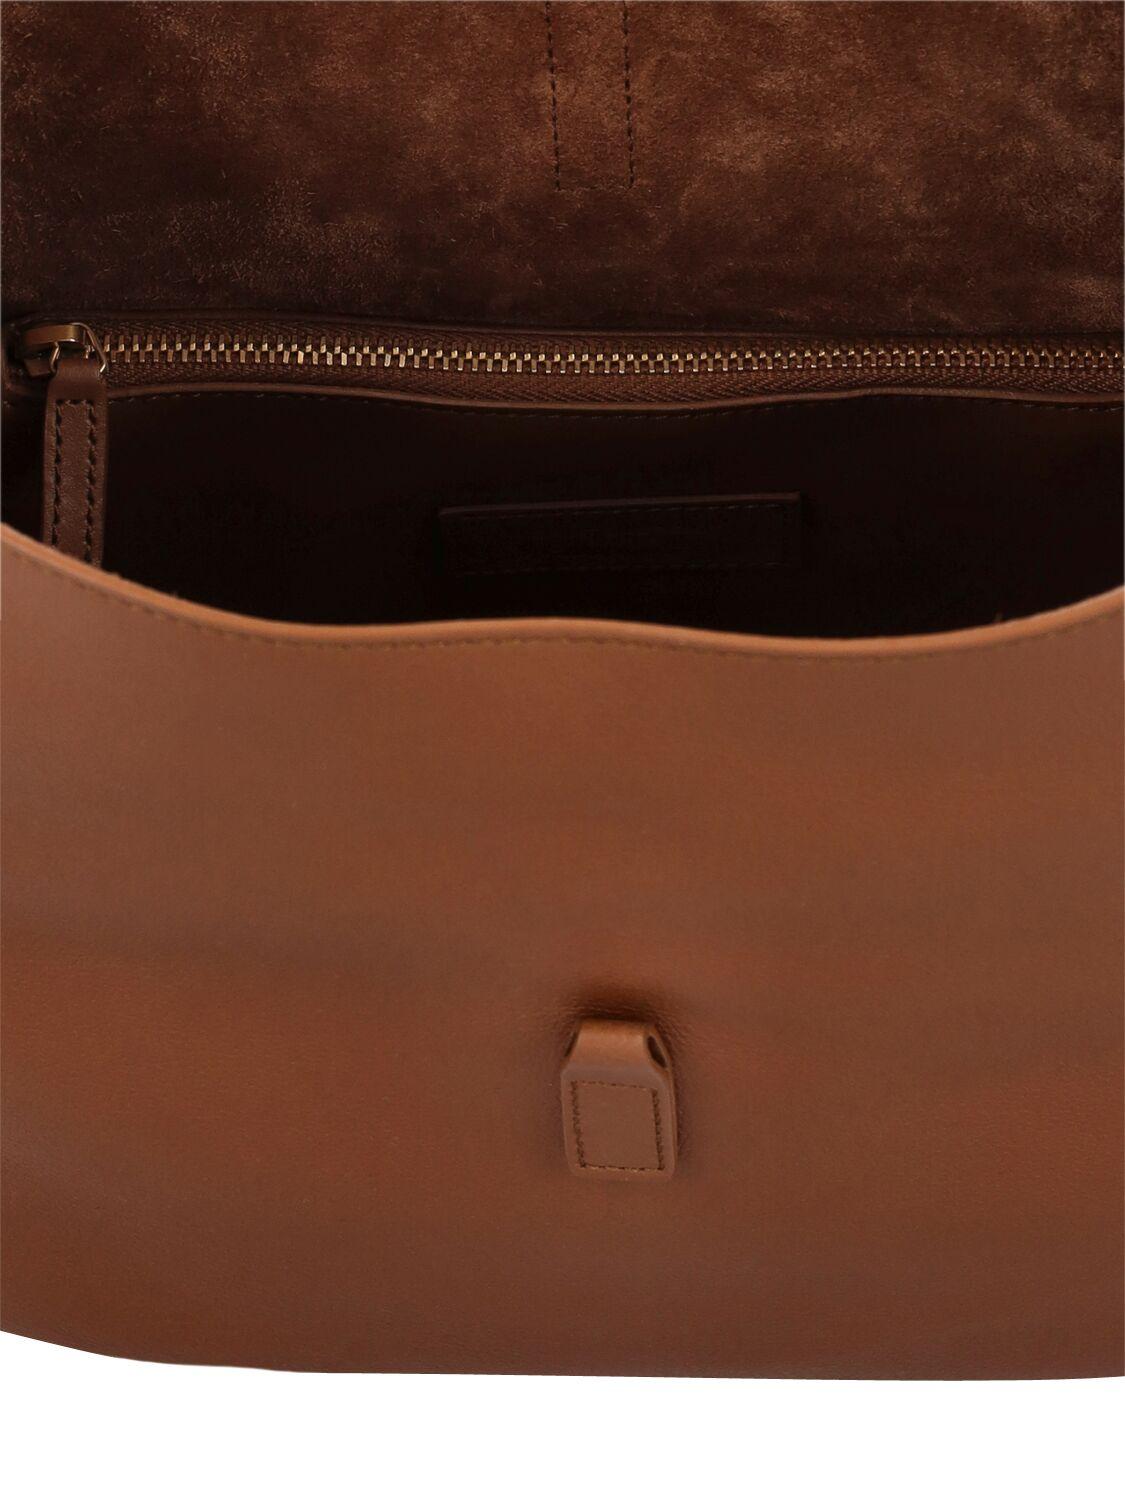 Saint Laurent Le 5 À 7 Small Leather Shoulder Bag